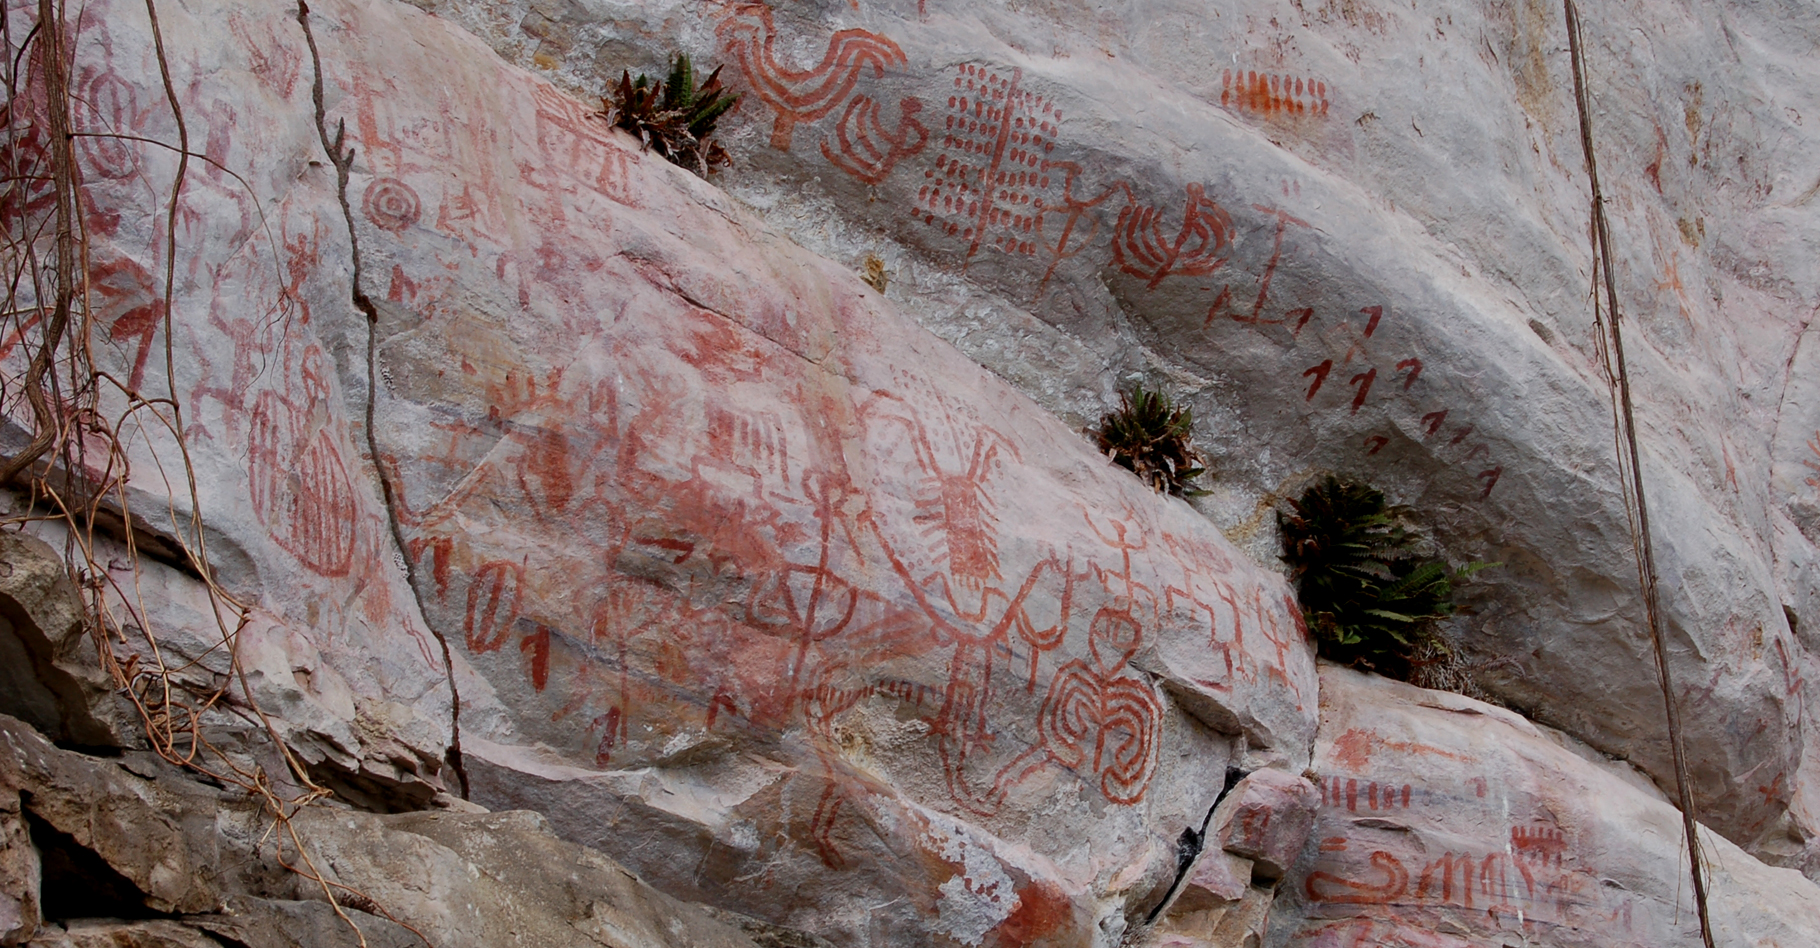 Panneau peint de signes et de figures symboliques dans l'extrême nord du Pérou (probablement XII-XVe siècles de notre ère). Jean Guffroy - ©IRD - Tous droits réservés